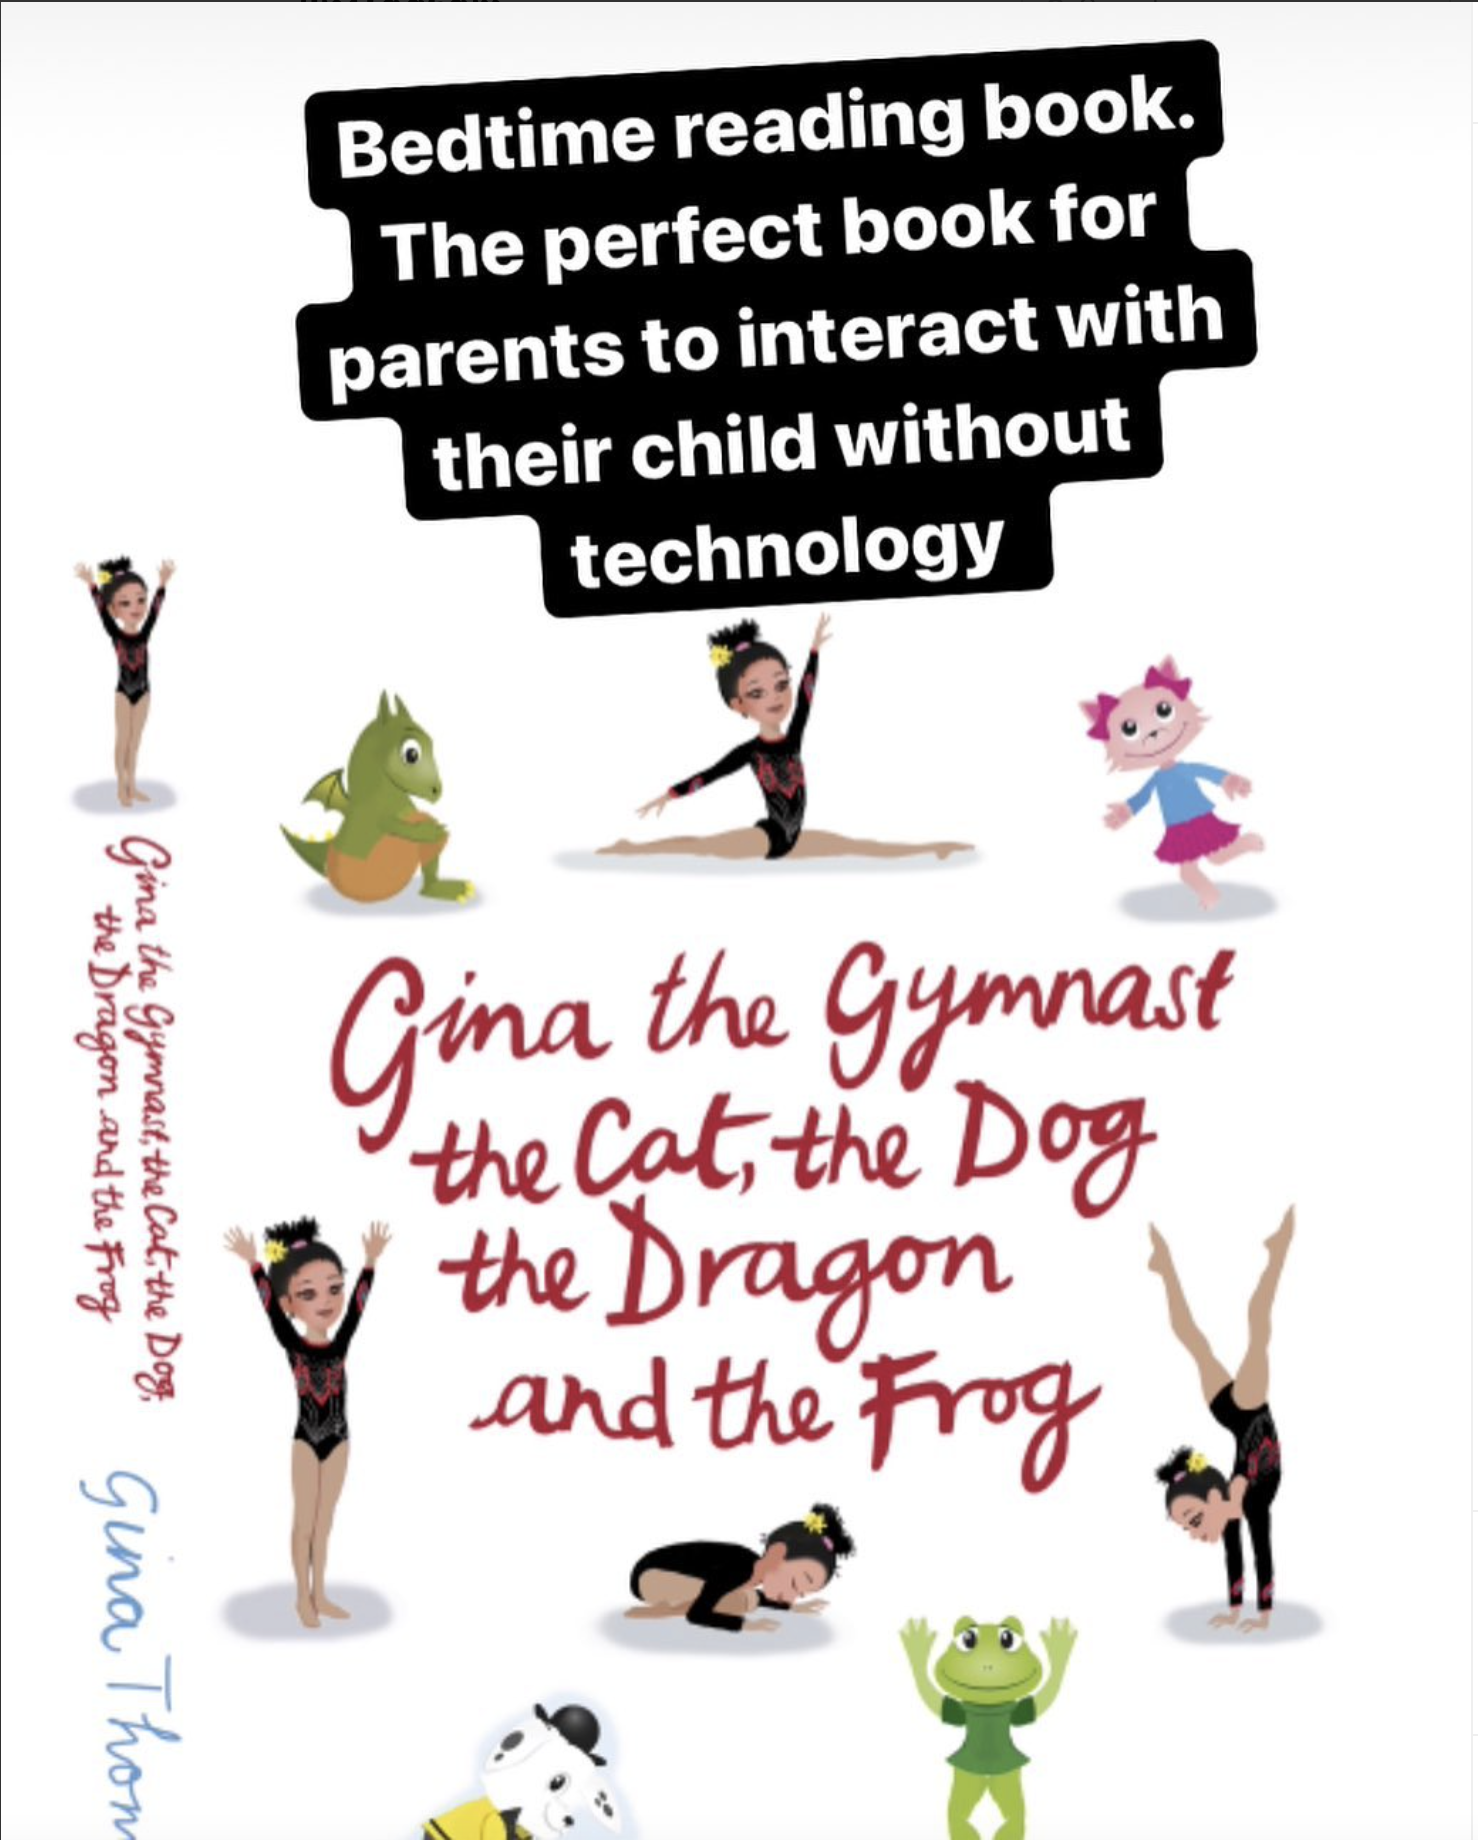 Head Coach Gina’s Fantastic Gymnastics Book